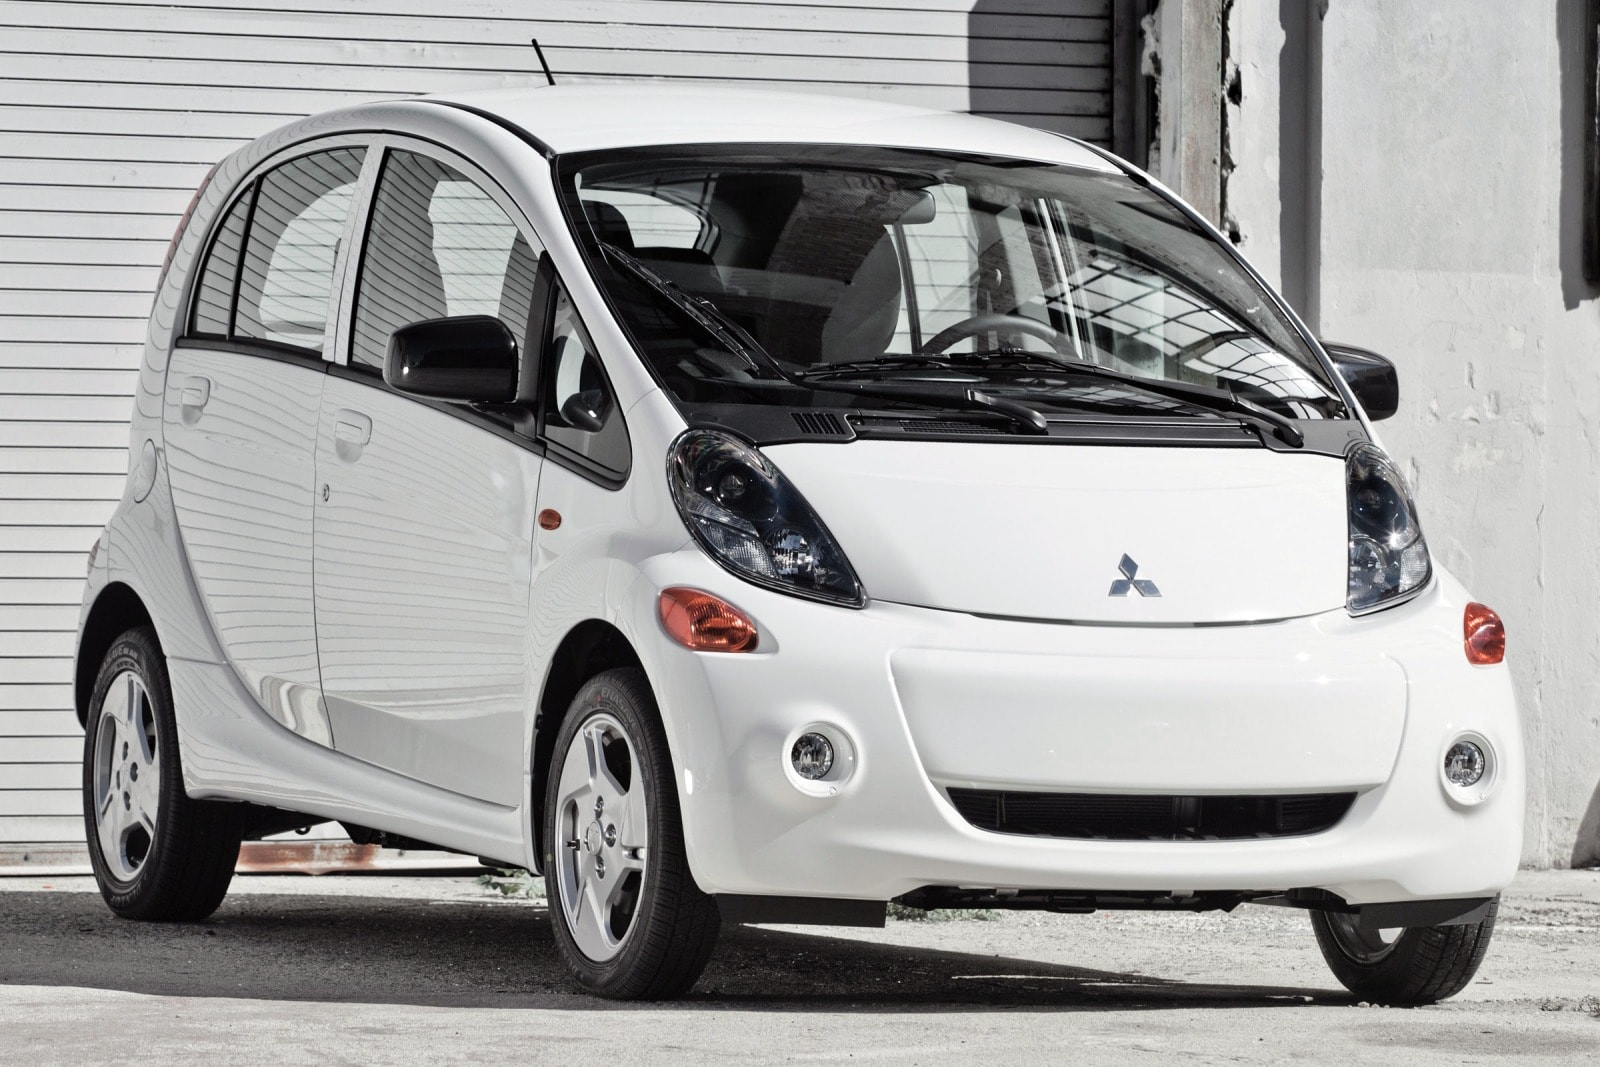 Quá thành công với dòng xe Hybrid, Nhật Bản đã tụt hậu trong mảng ô tô điện như thế nào? - Ảnh 3.